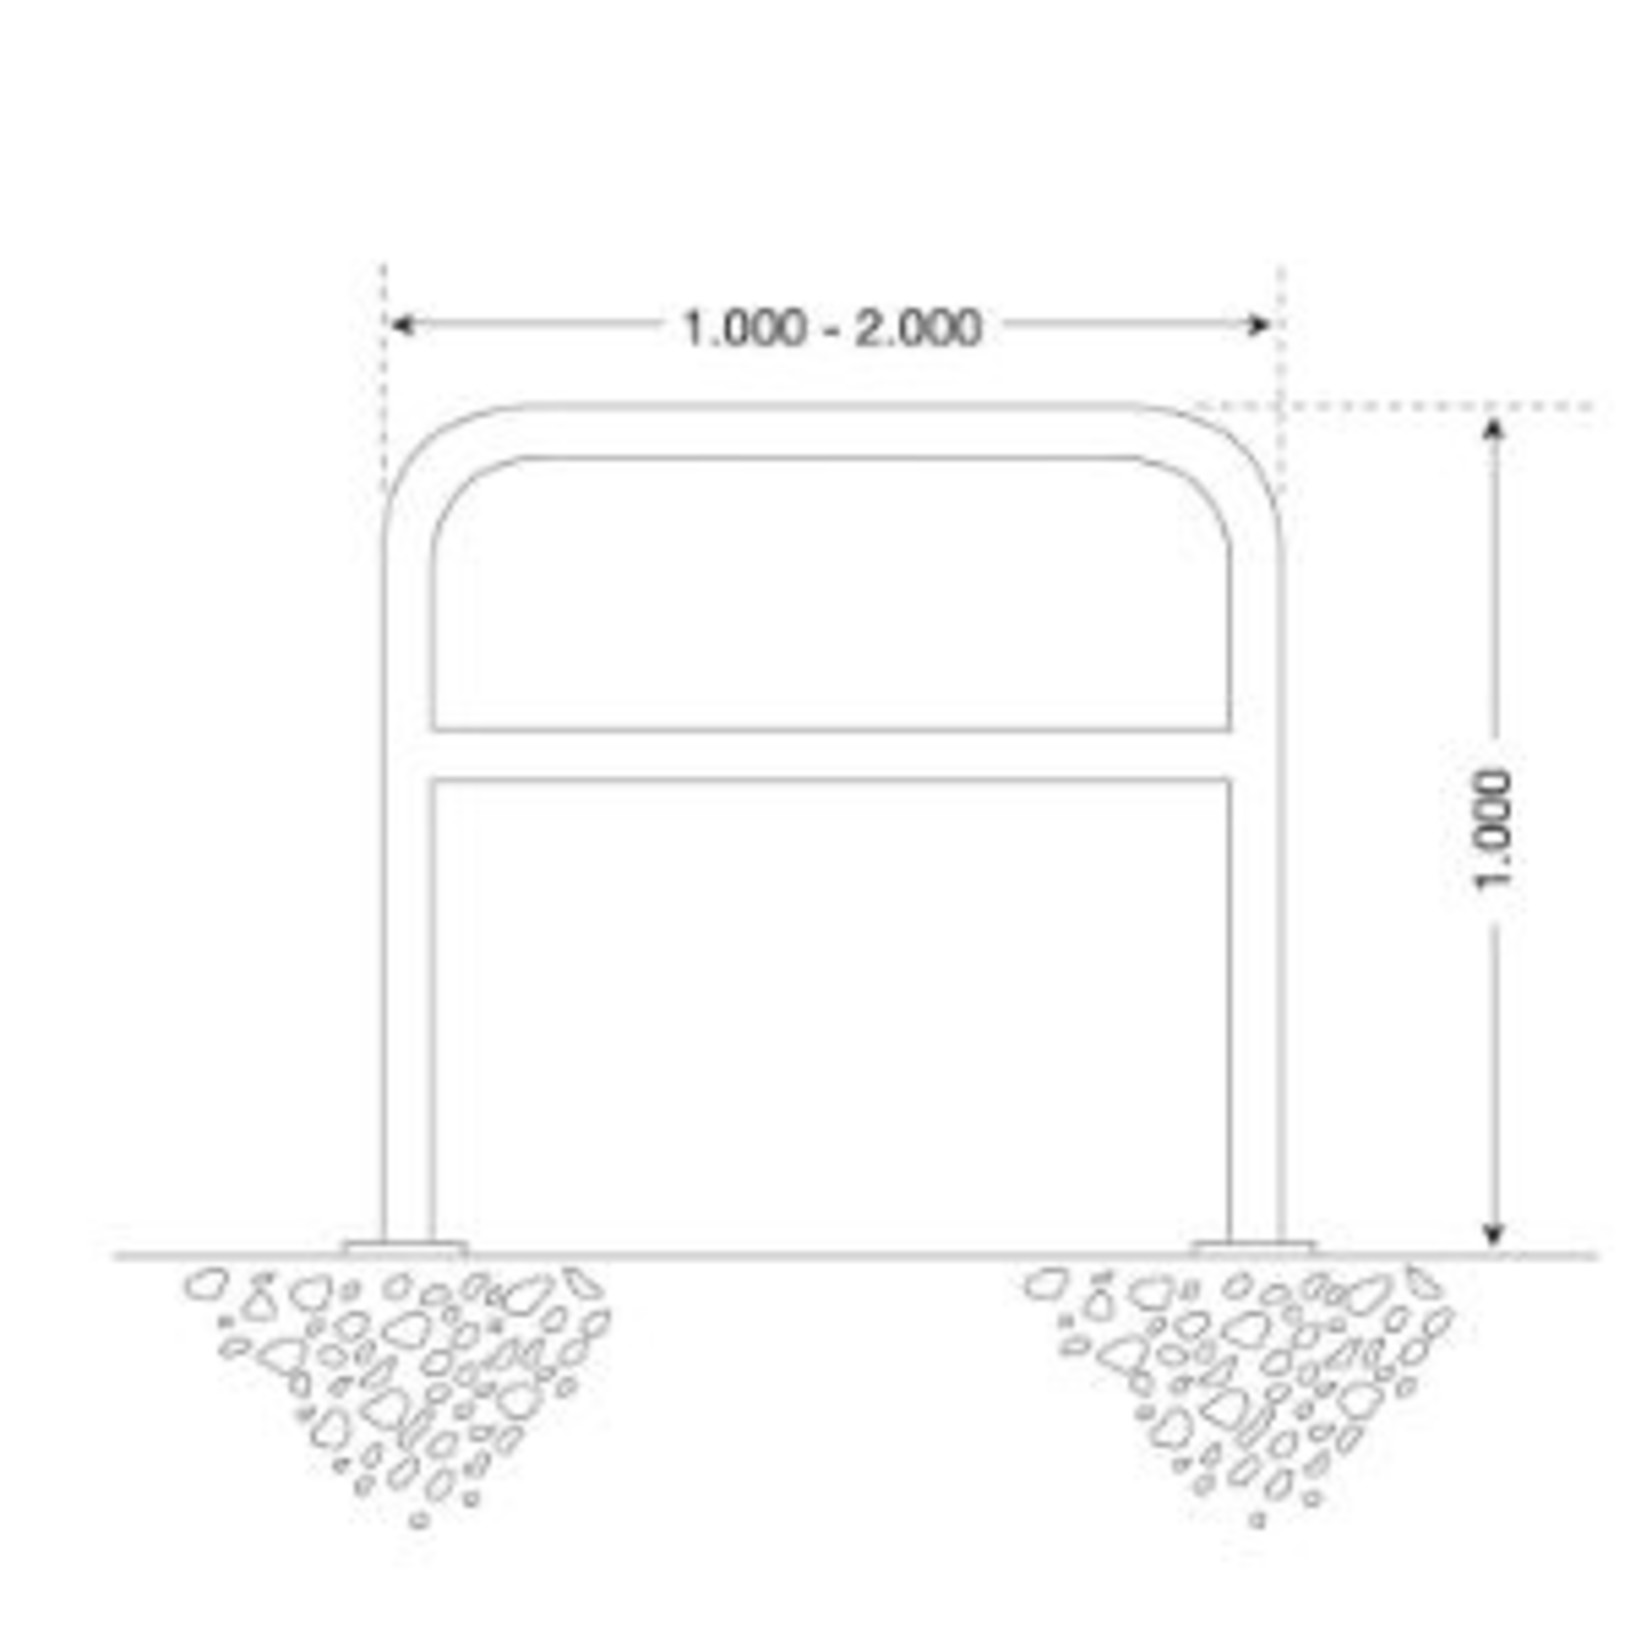 MORION geleidehek RVS - dwarsbuis - 1000 x 1000 x 60 mm - voetplaten